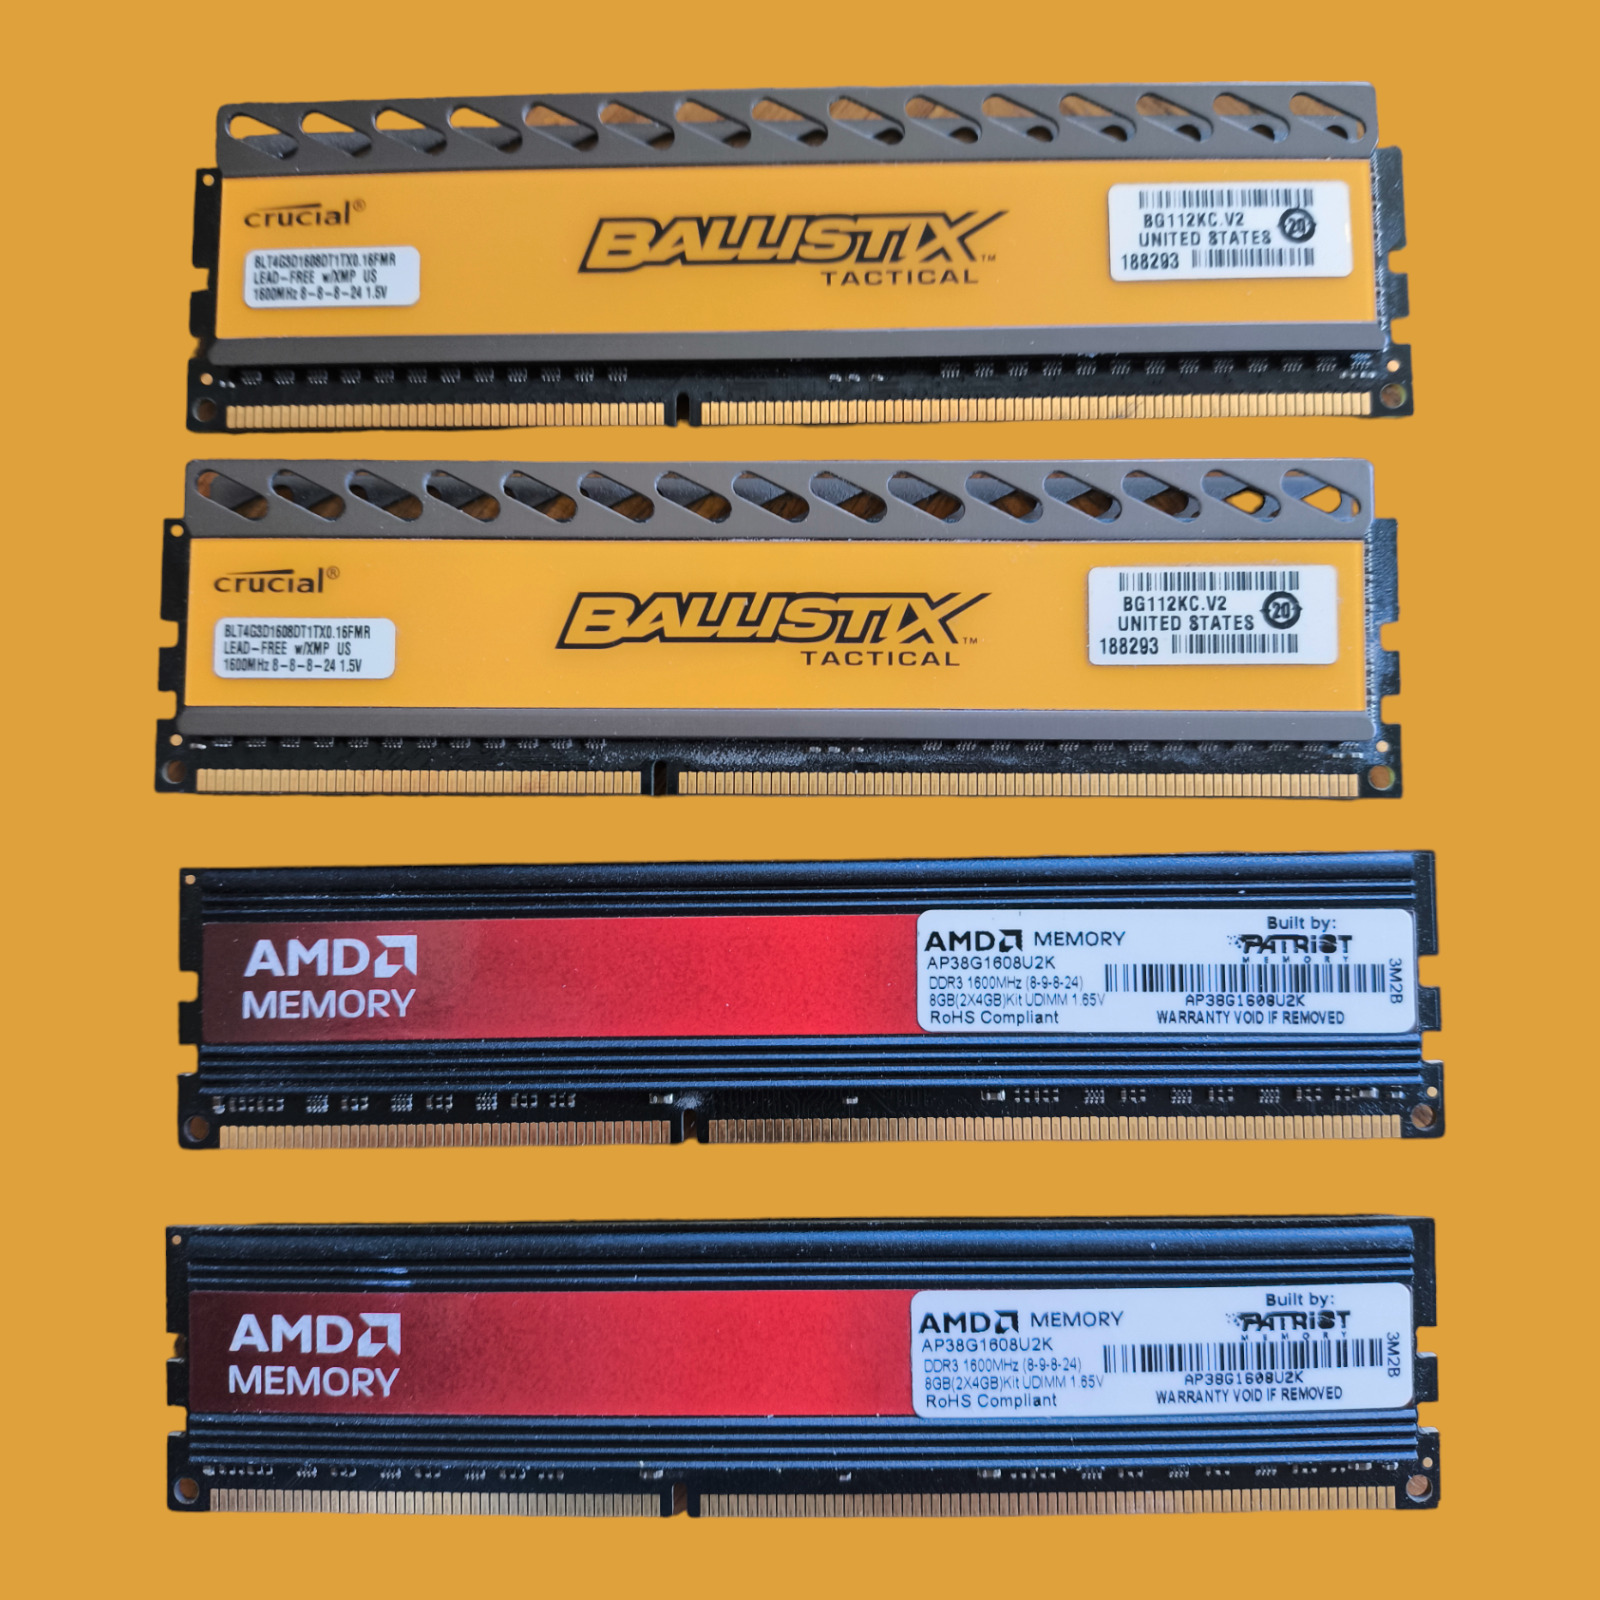 DDR3 Memory - 16GB:  2x 4GB Crucial Ballistix & 2x 4GB AMD (Built by Patriot)